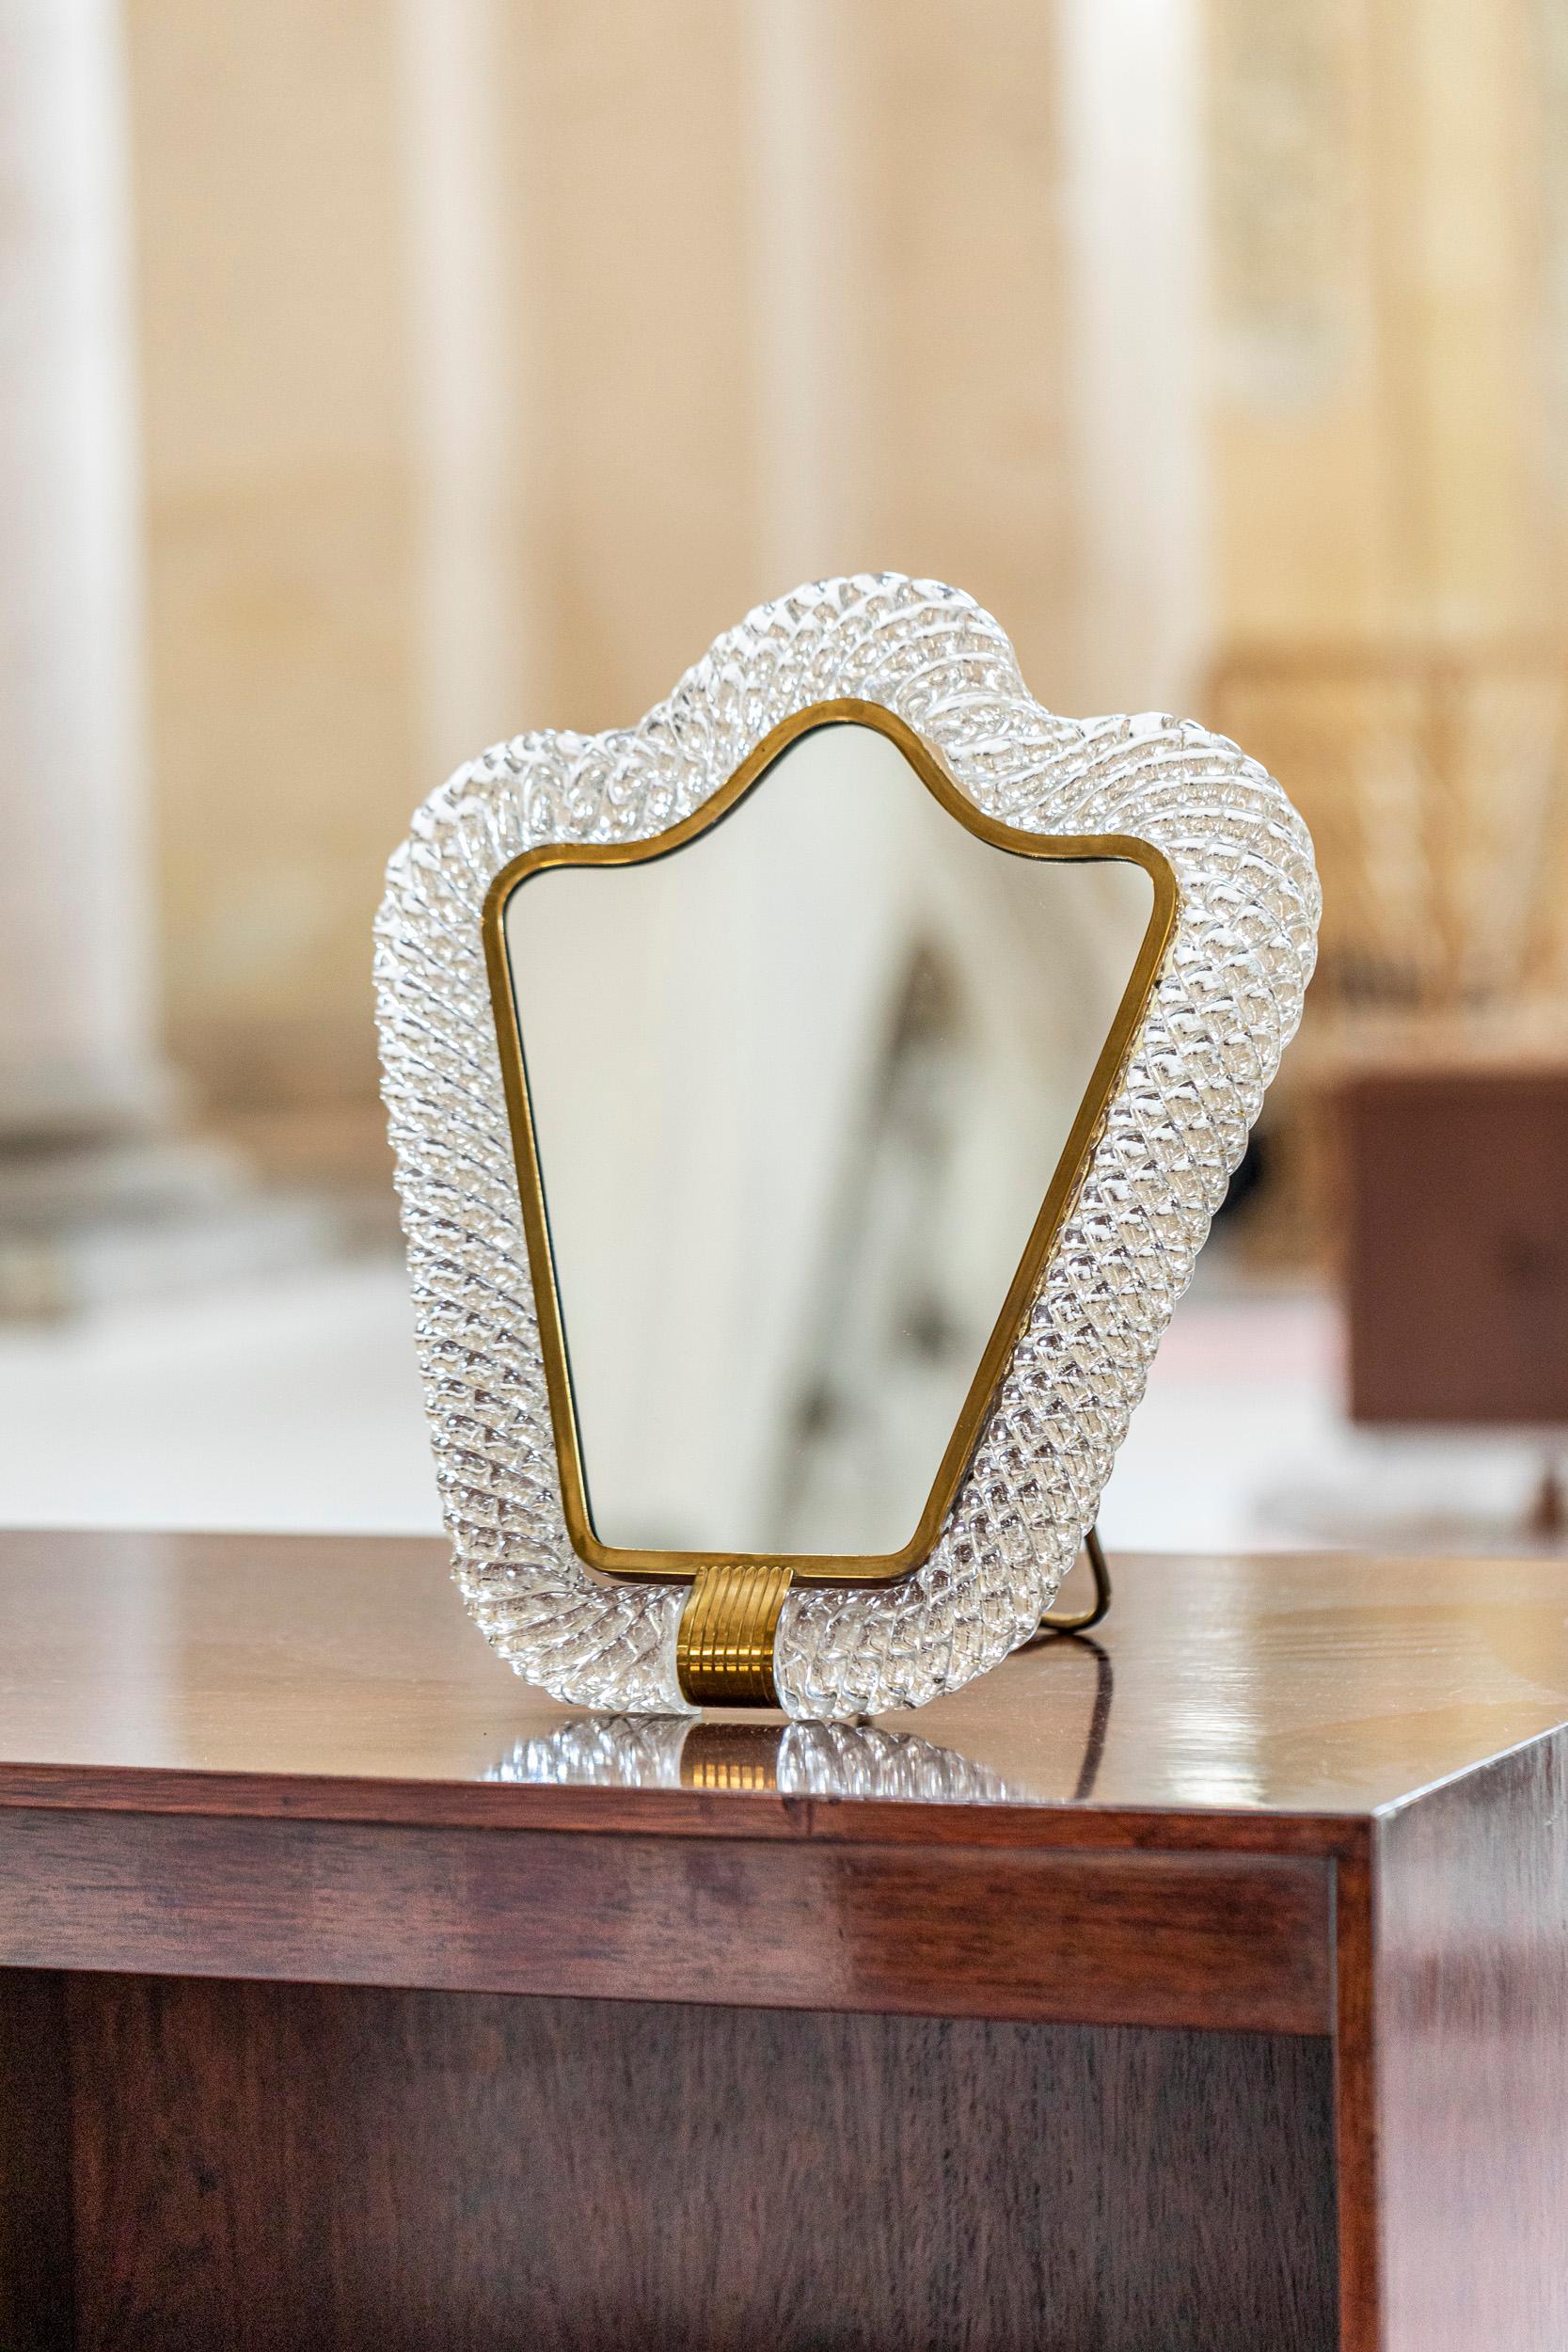 Barovier & Toso Tischspiegel mit Rahmen aus Muranoglas Torchon.
Spiegel mit einem wunderschönen Rahmen ganz aus Muranoglas, gearbeitet in der Art von 